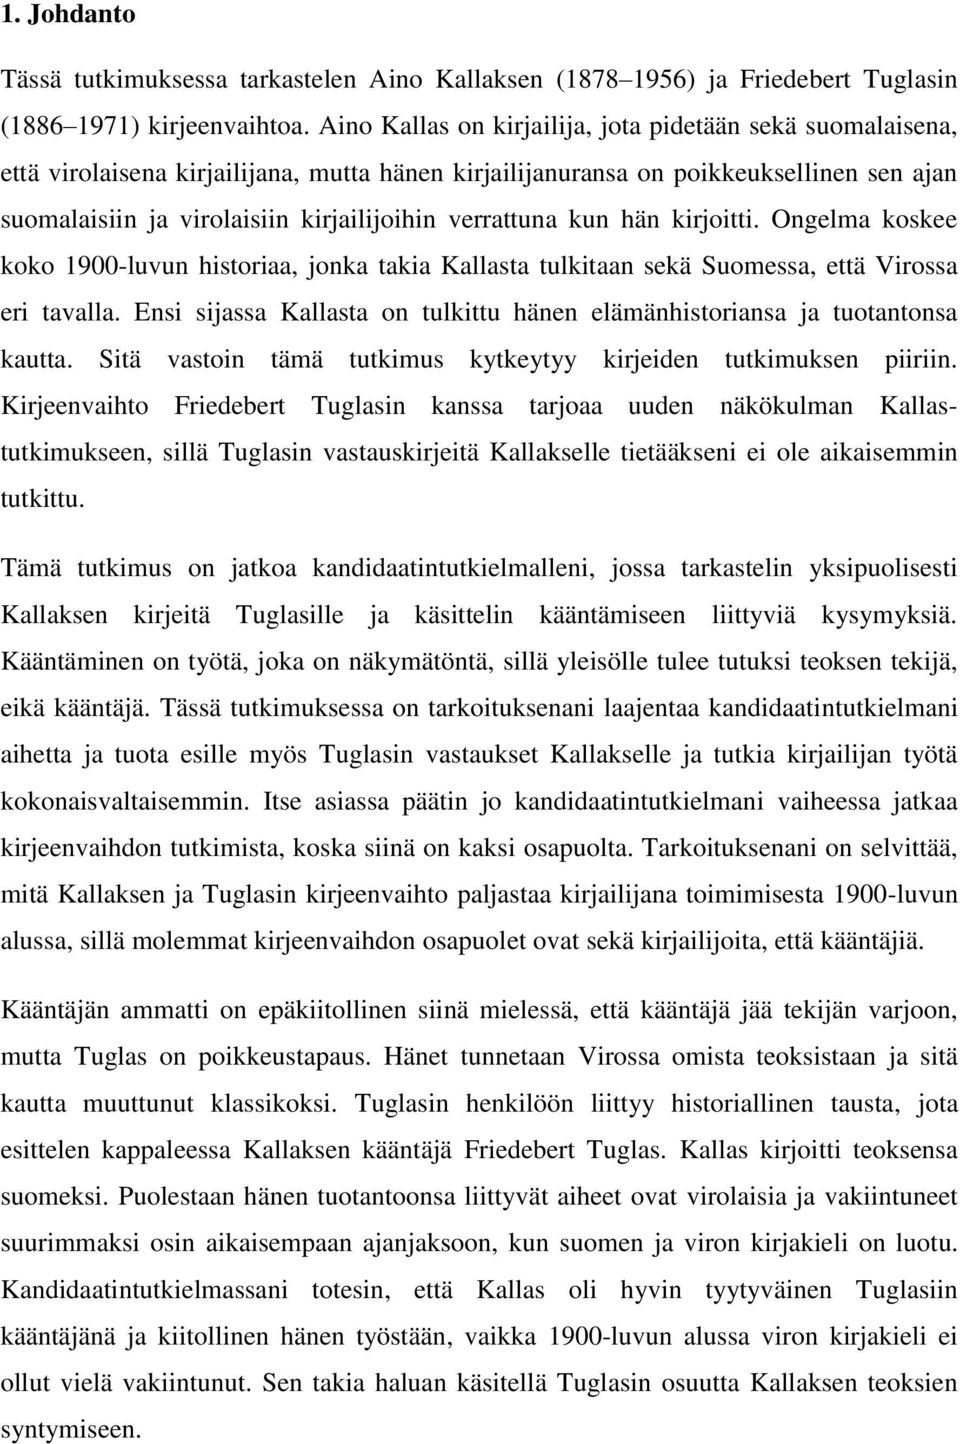 verrattuna kun hän kirjoitti. Ongelma koskee koko 1900-luvun historiaa, jonka takia Kallasta tulkitaan sekä Suomessa, että Virossa eri tavalla.